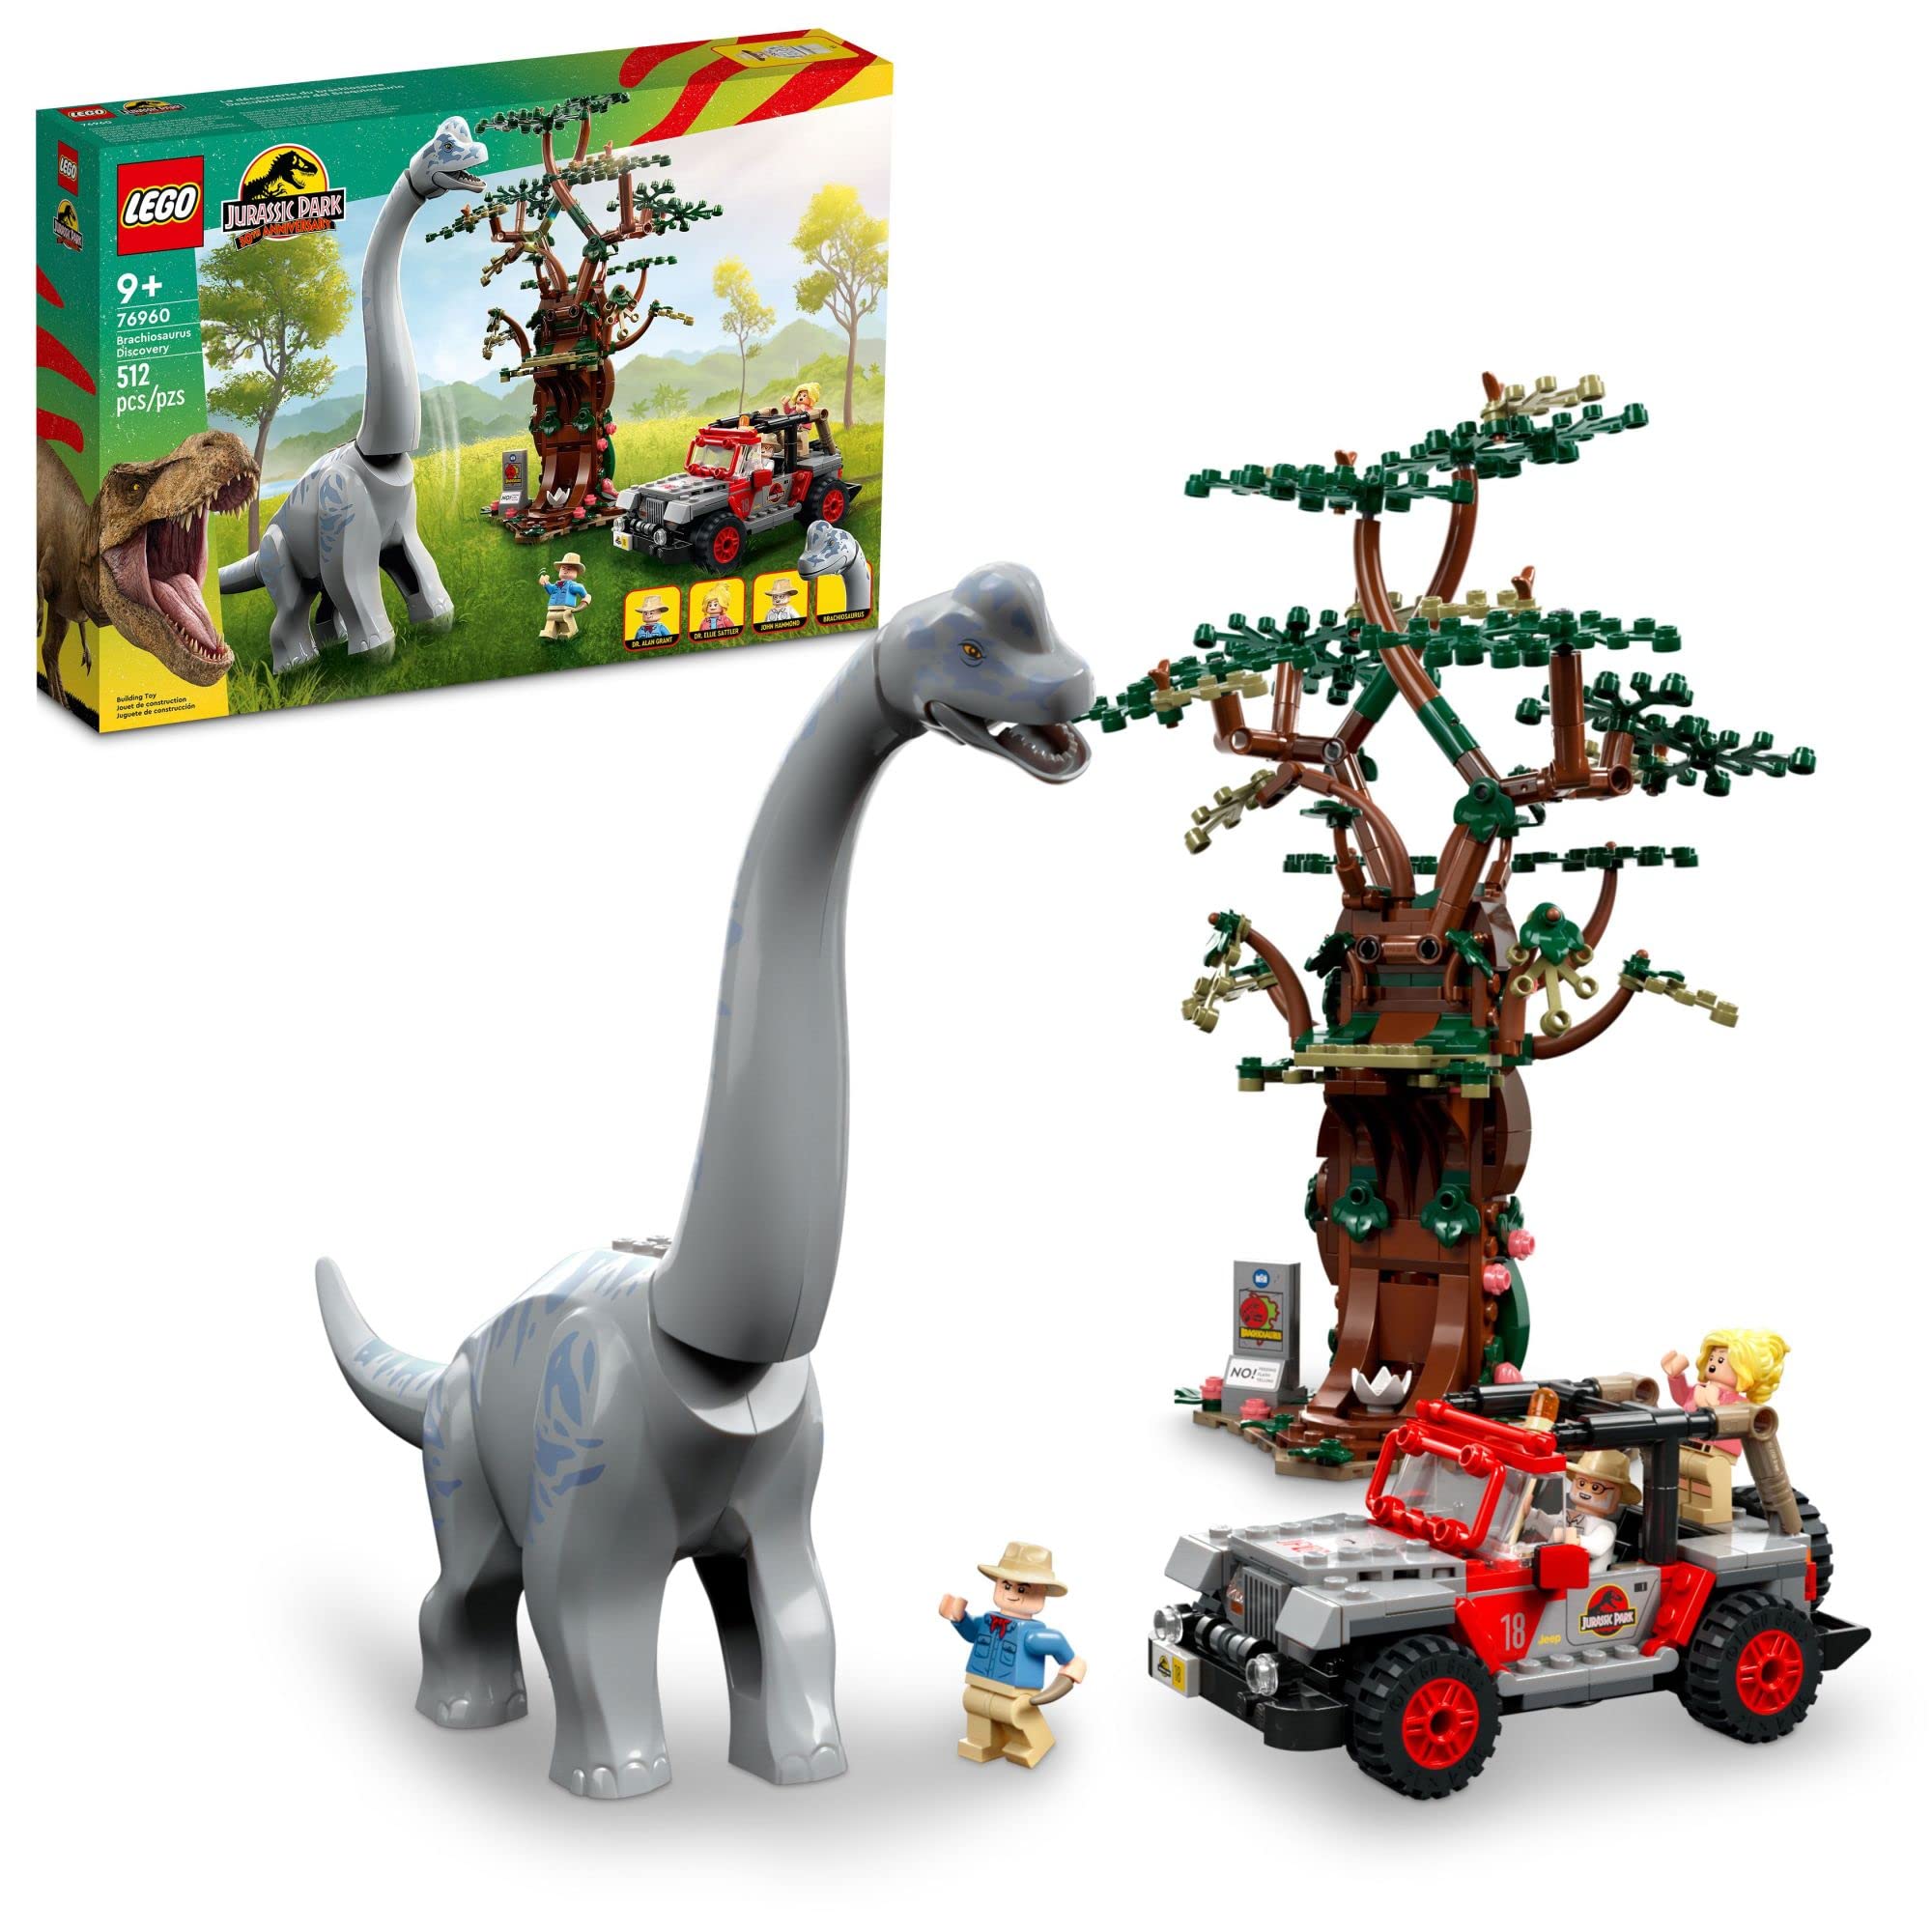  LEGO Jurassic World Brachiosaurus Discovery 76960 Jurassic Park Dinosaurierspielzeug zum 30-jährigen Jubiläum; Mit einer großen Dinosaurierfigur und einem aus Ziegeln gebauten Jeep Wrangler-Autosp...